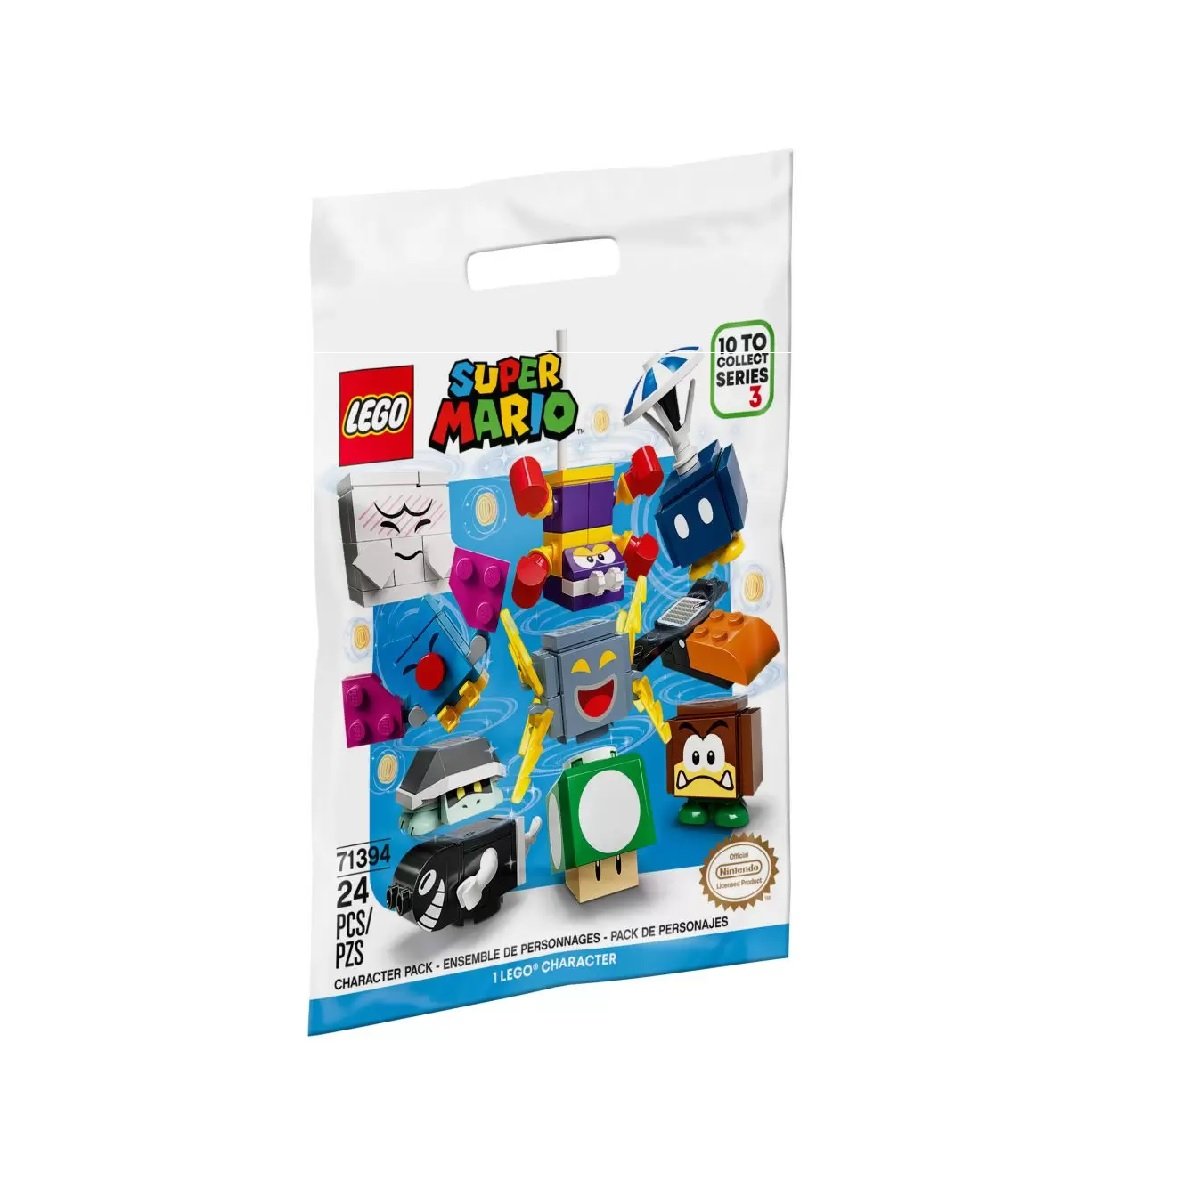 Lego Super Mario 24 Pc Serie 3 Pacote de Personagens 71394